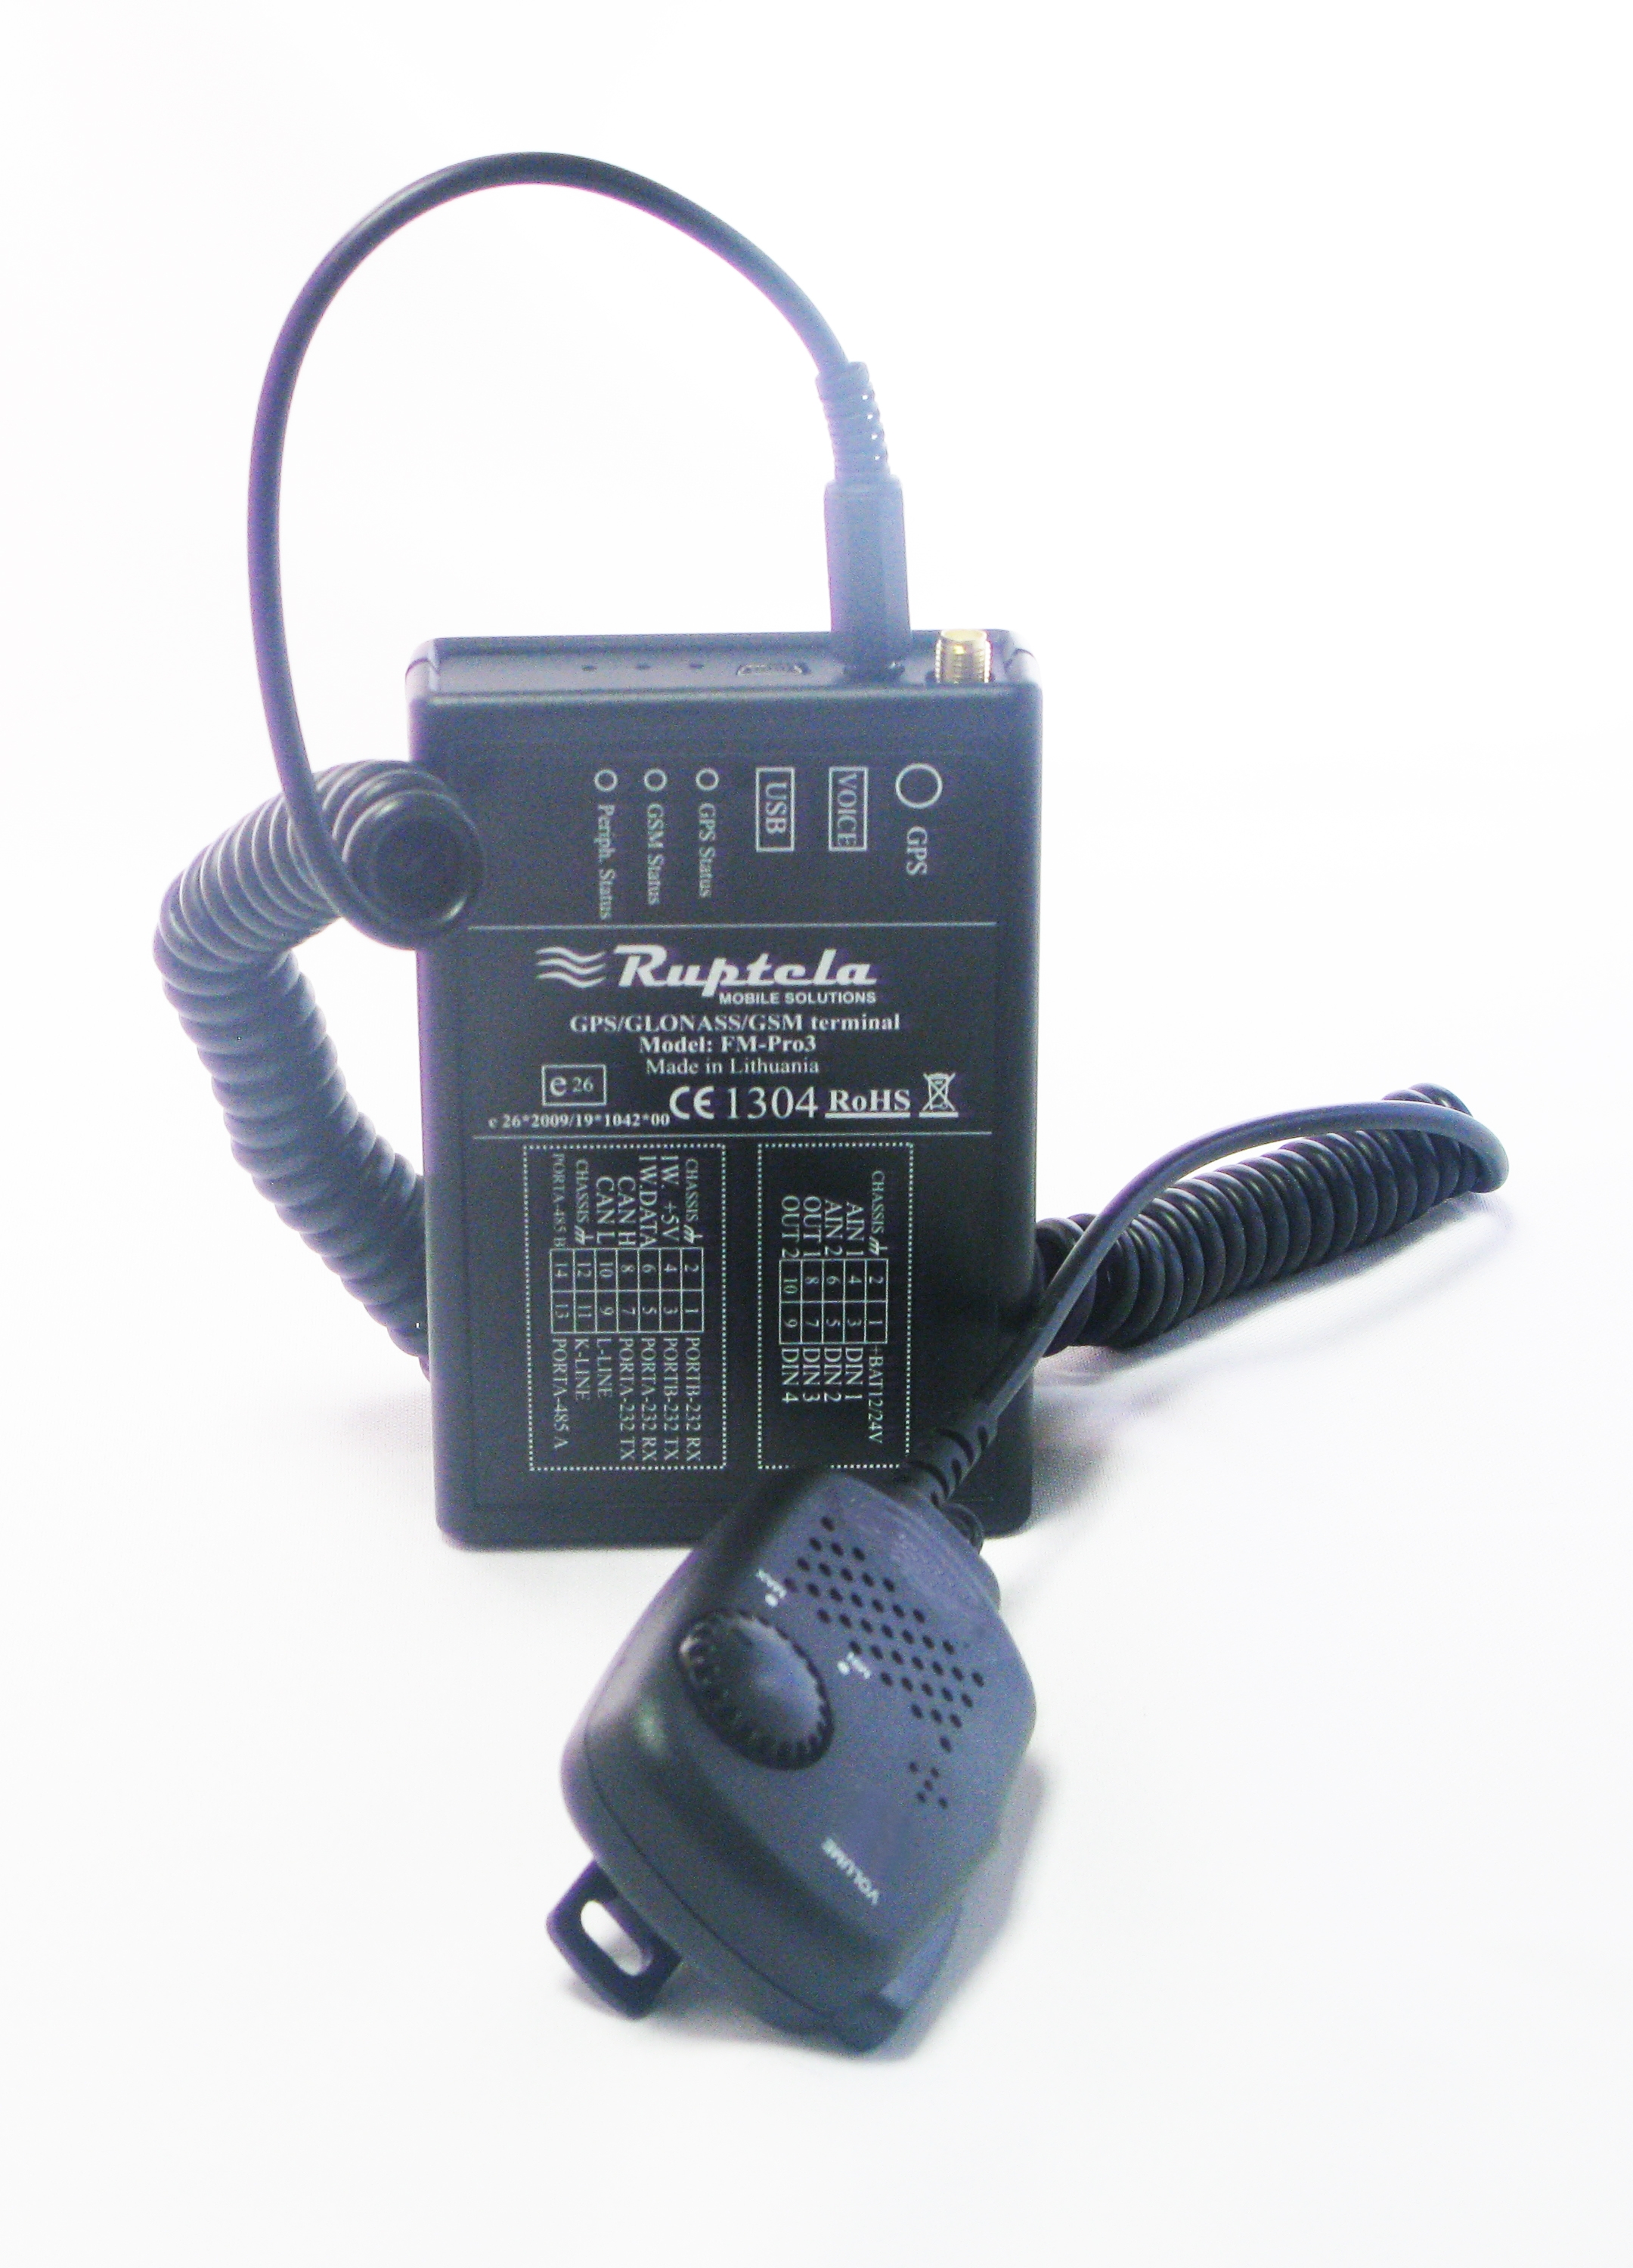 Ruptela FM-Pro3 R ГЛОНАСС. Соответствует Приказу №285 МинТранса. Цена 9500 руб.